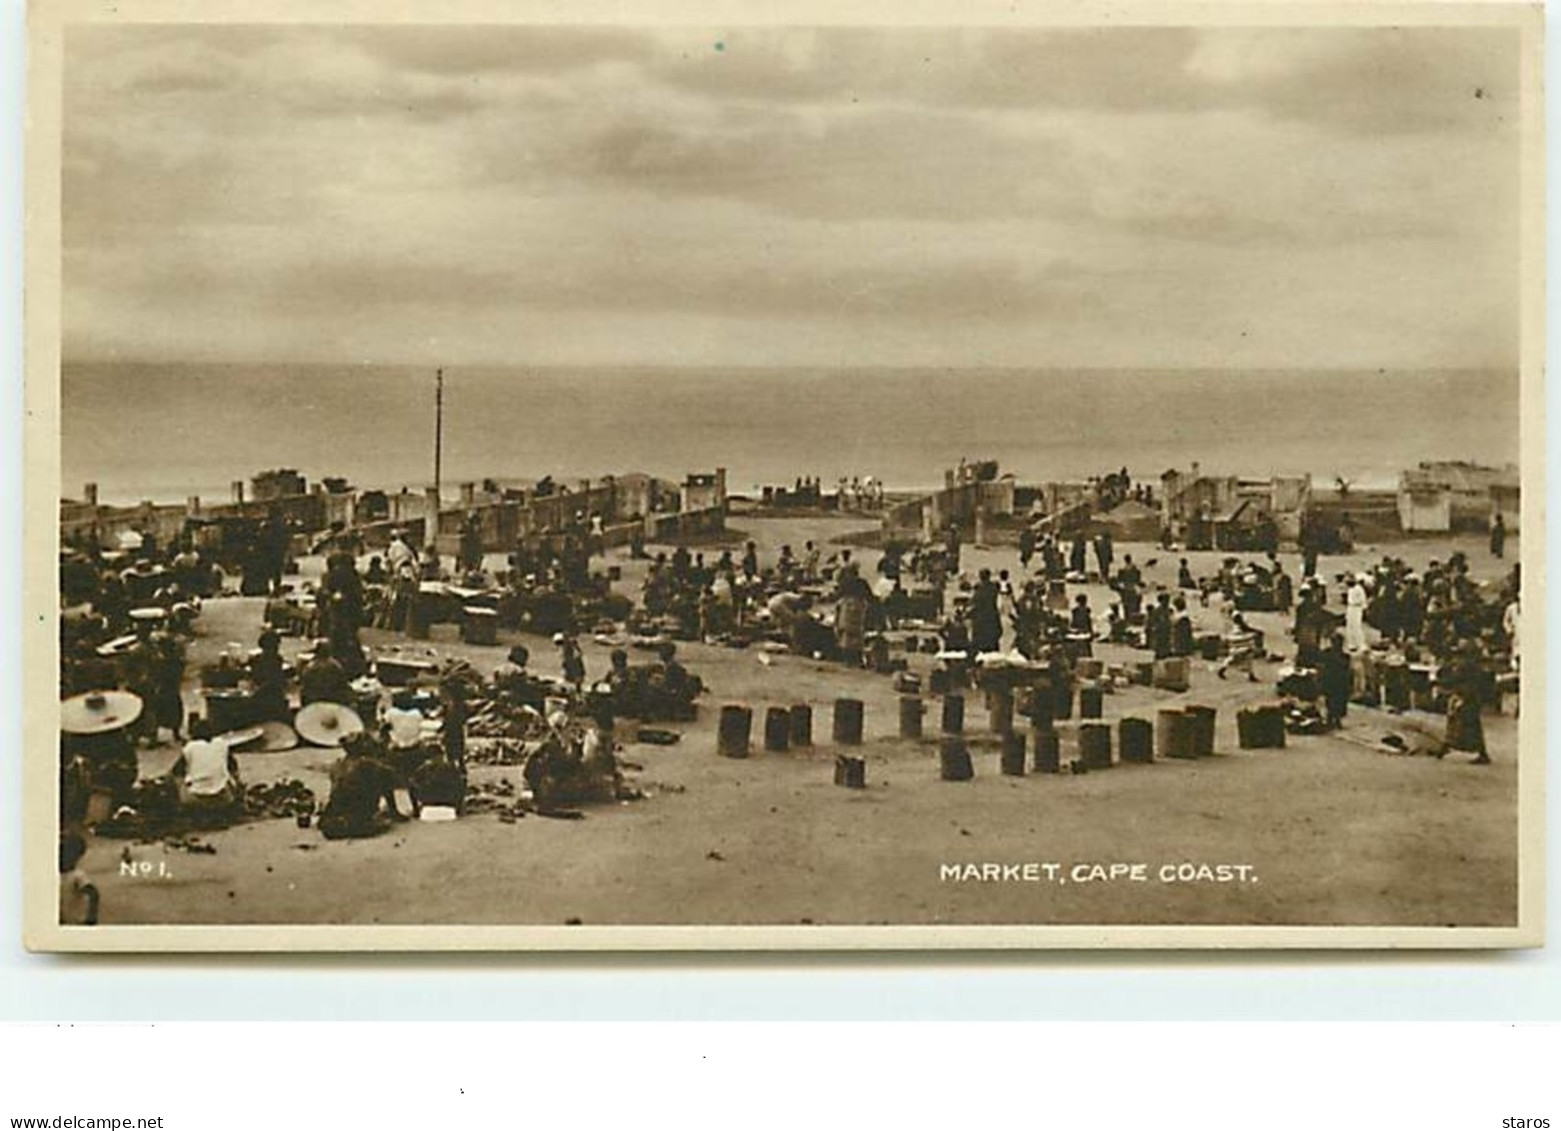 Market, Cape Coast - Ghana - Gold Coast